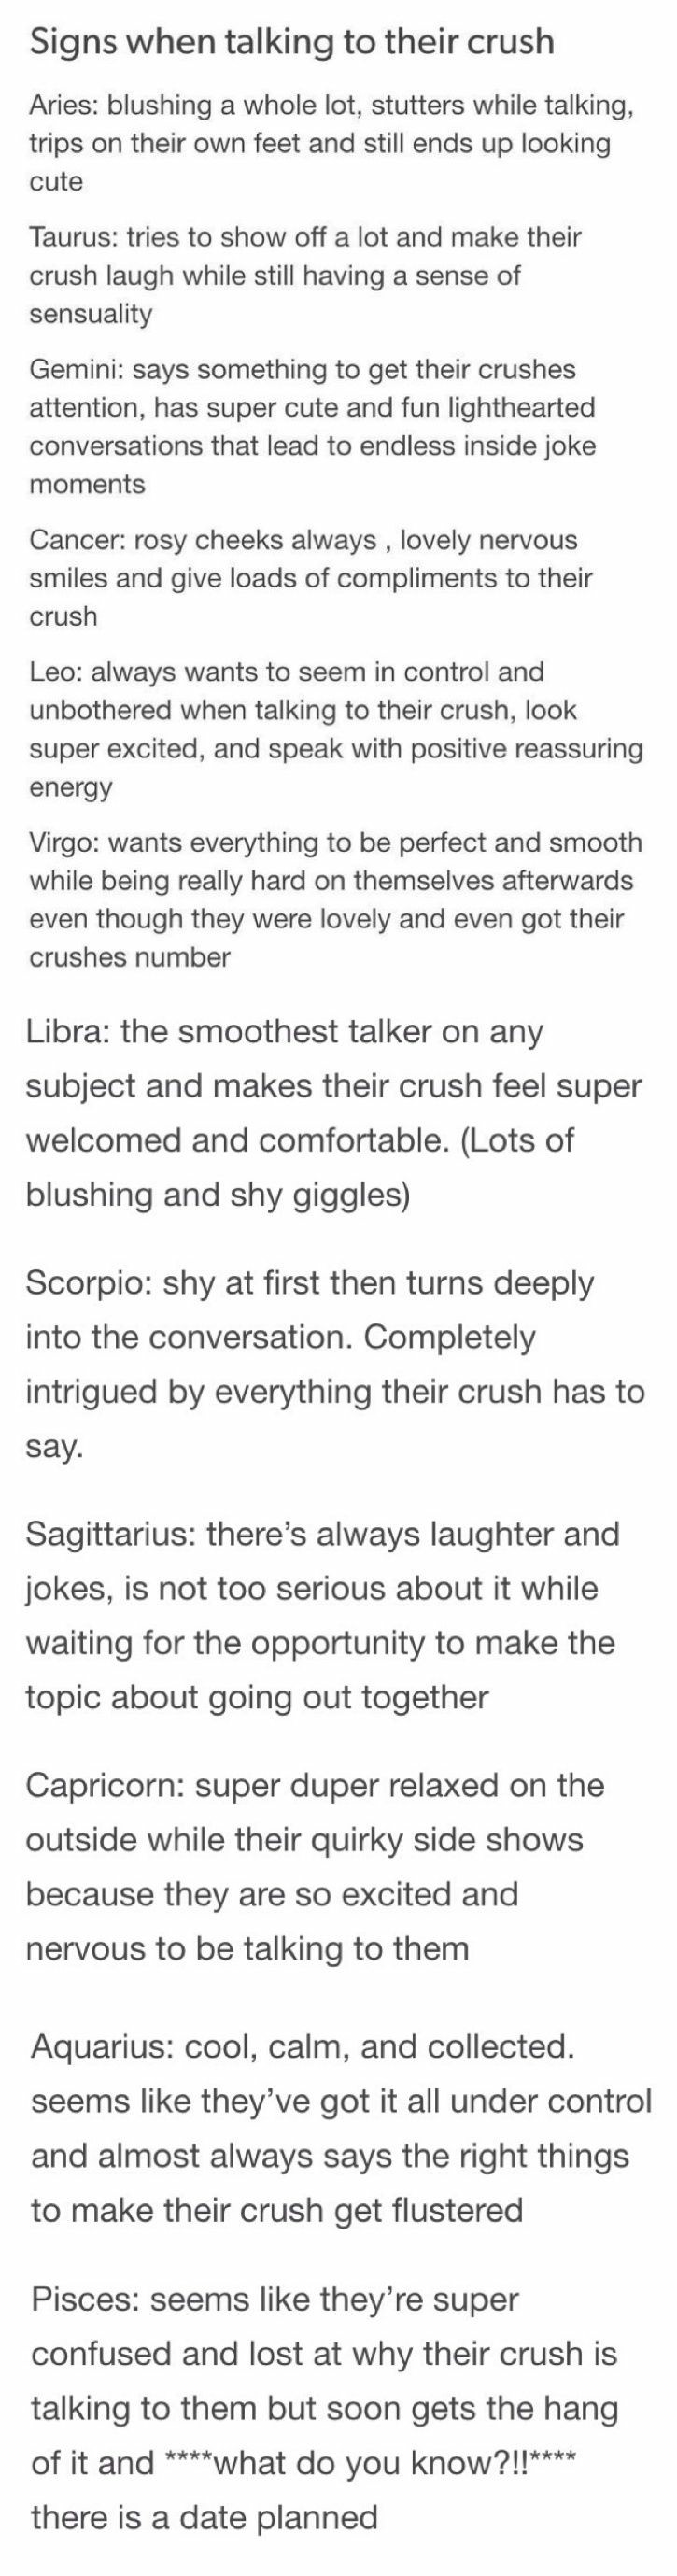 Are scorpios shy around their crush?